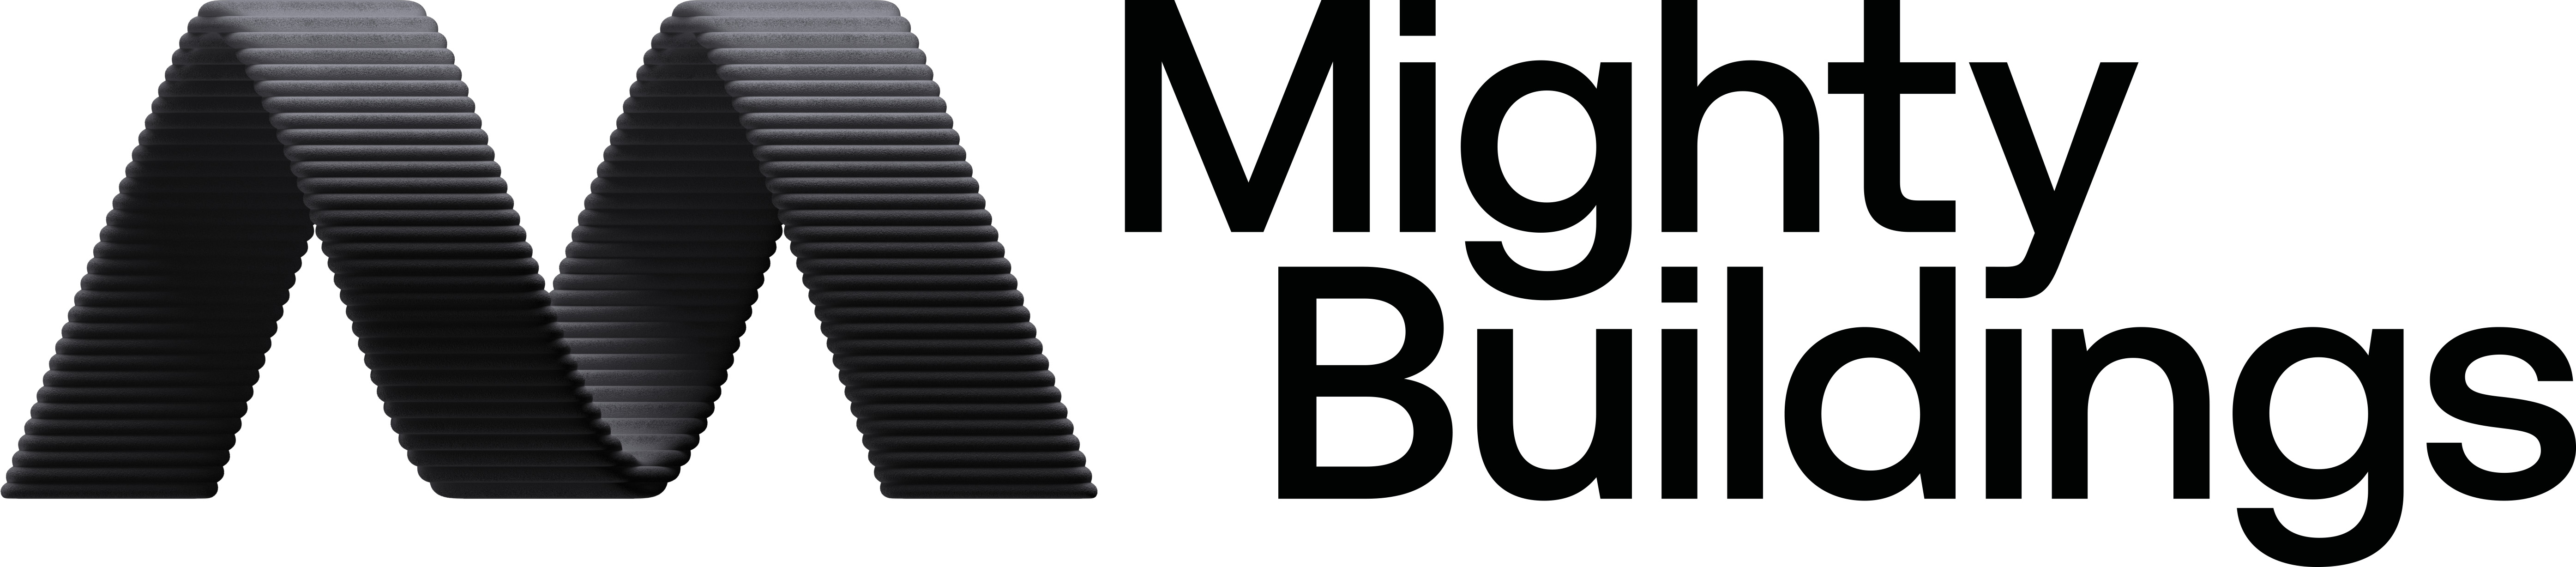 Mighty Buildings company logo